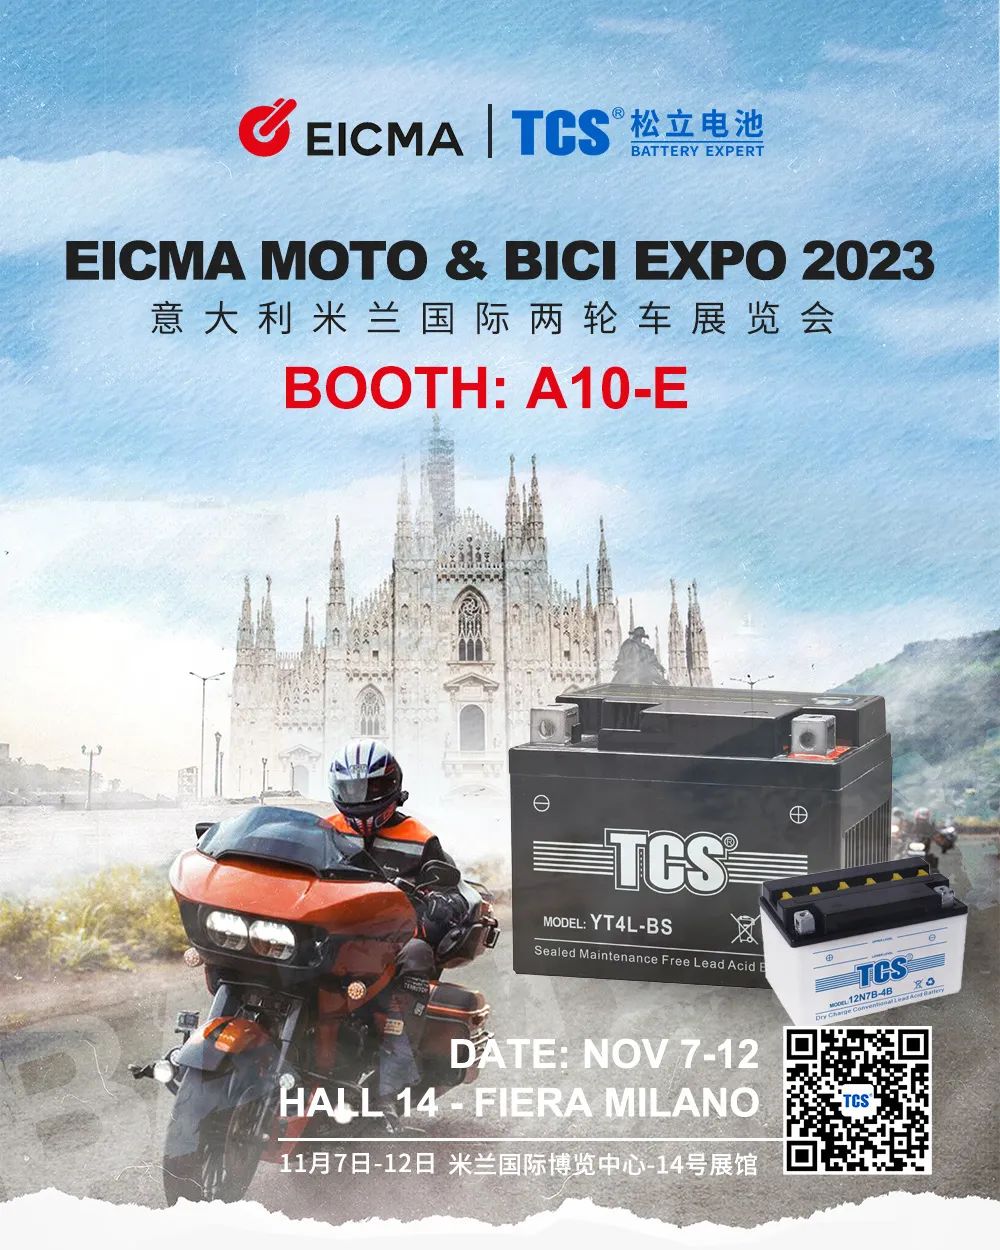 EICMA MOTO & BICI EXPO 2023